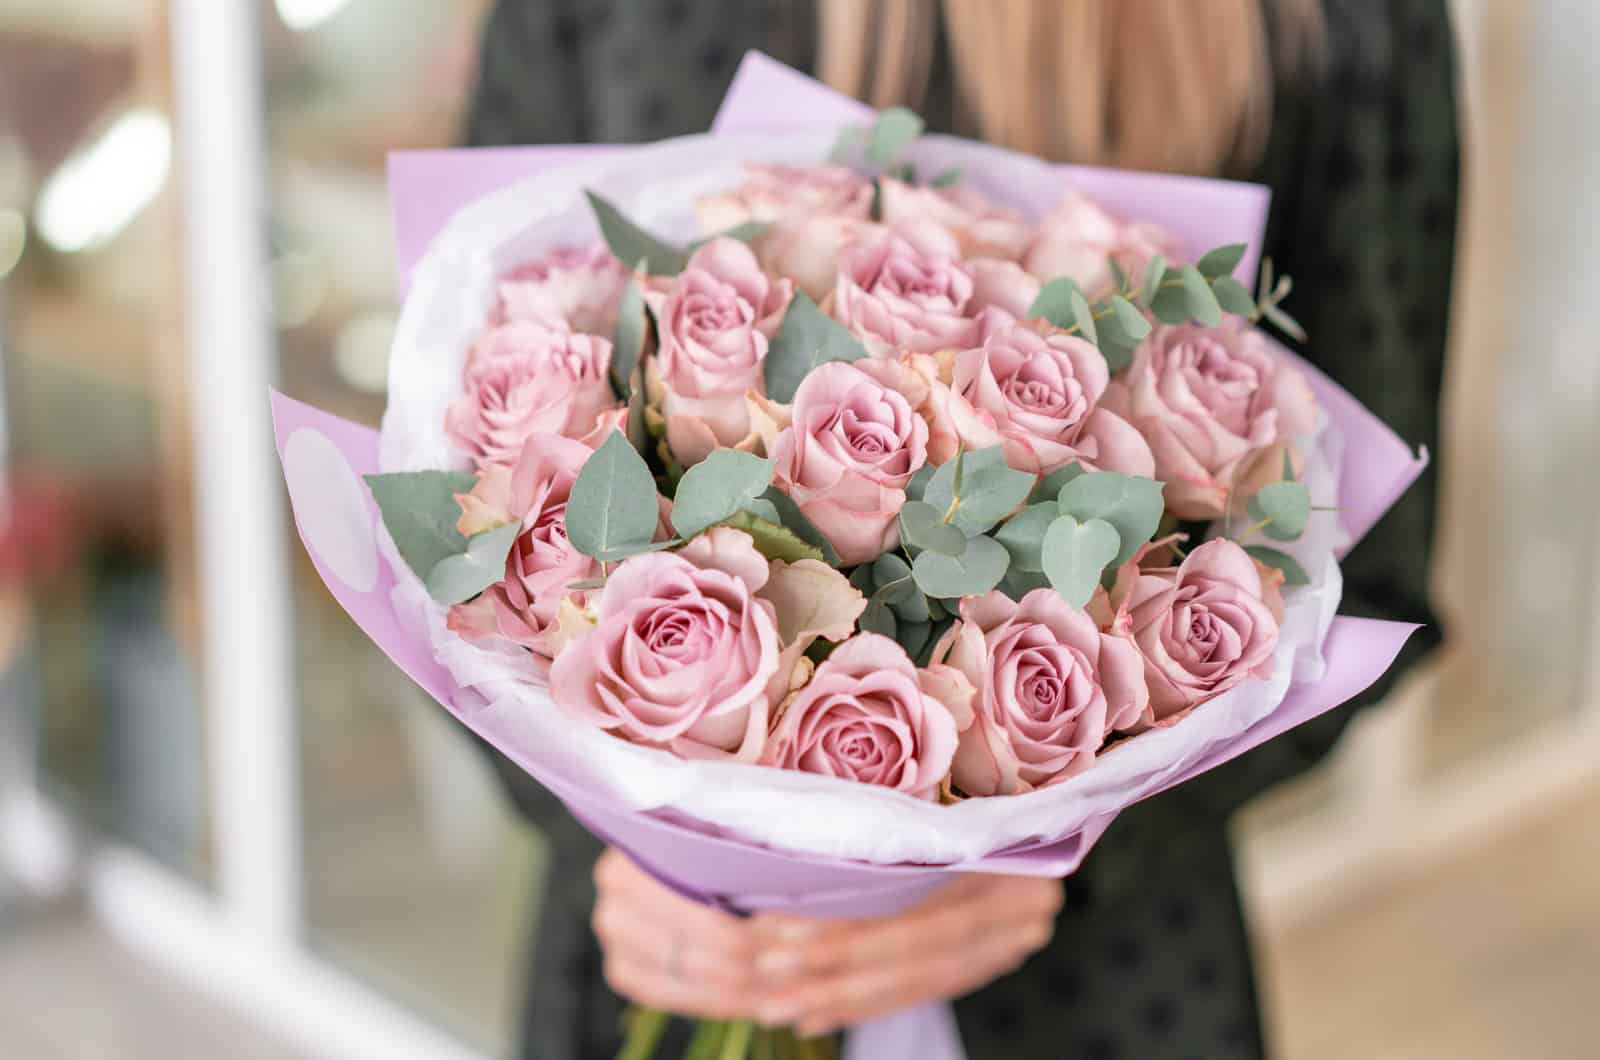 Beau bouquet de roses violettes pastel dans les mains de la femme